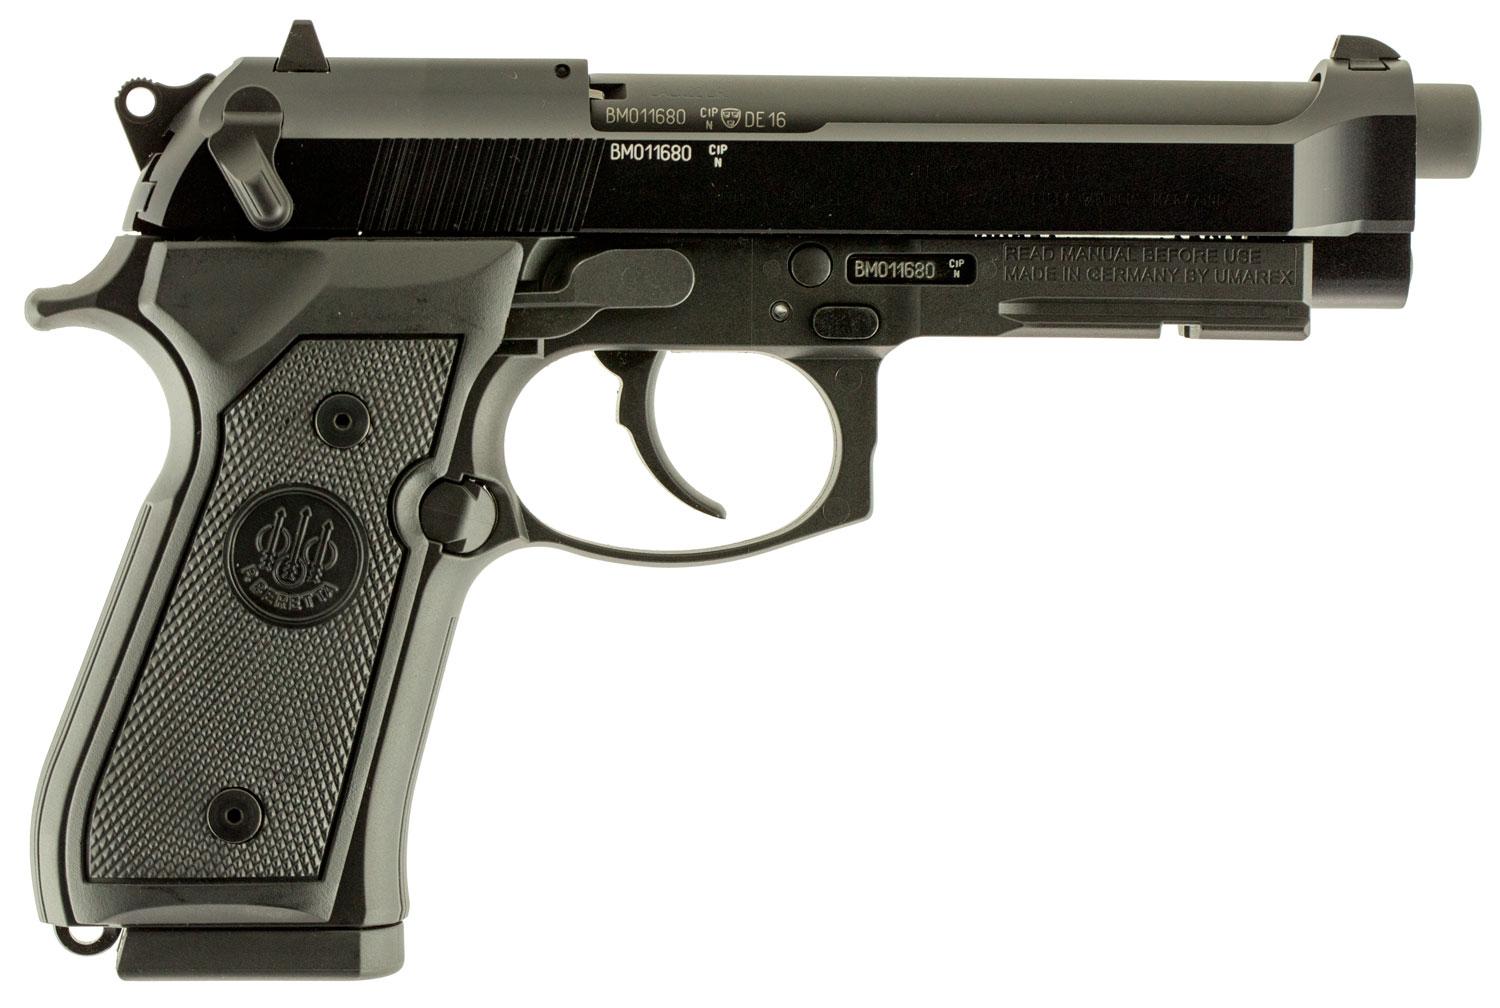  Beretta 92fs Type M9a1 22lr 1- 15rd